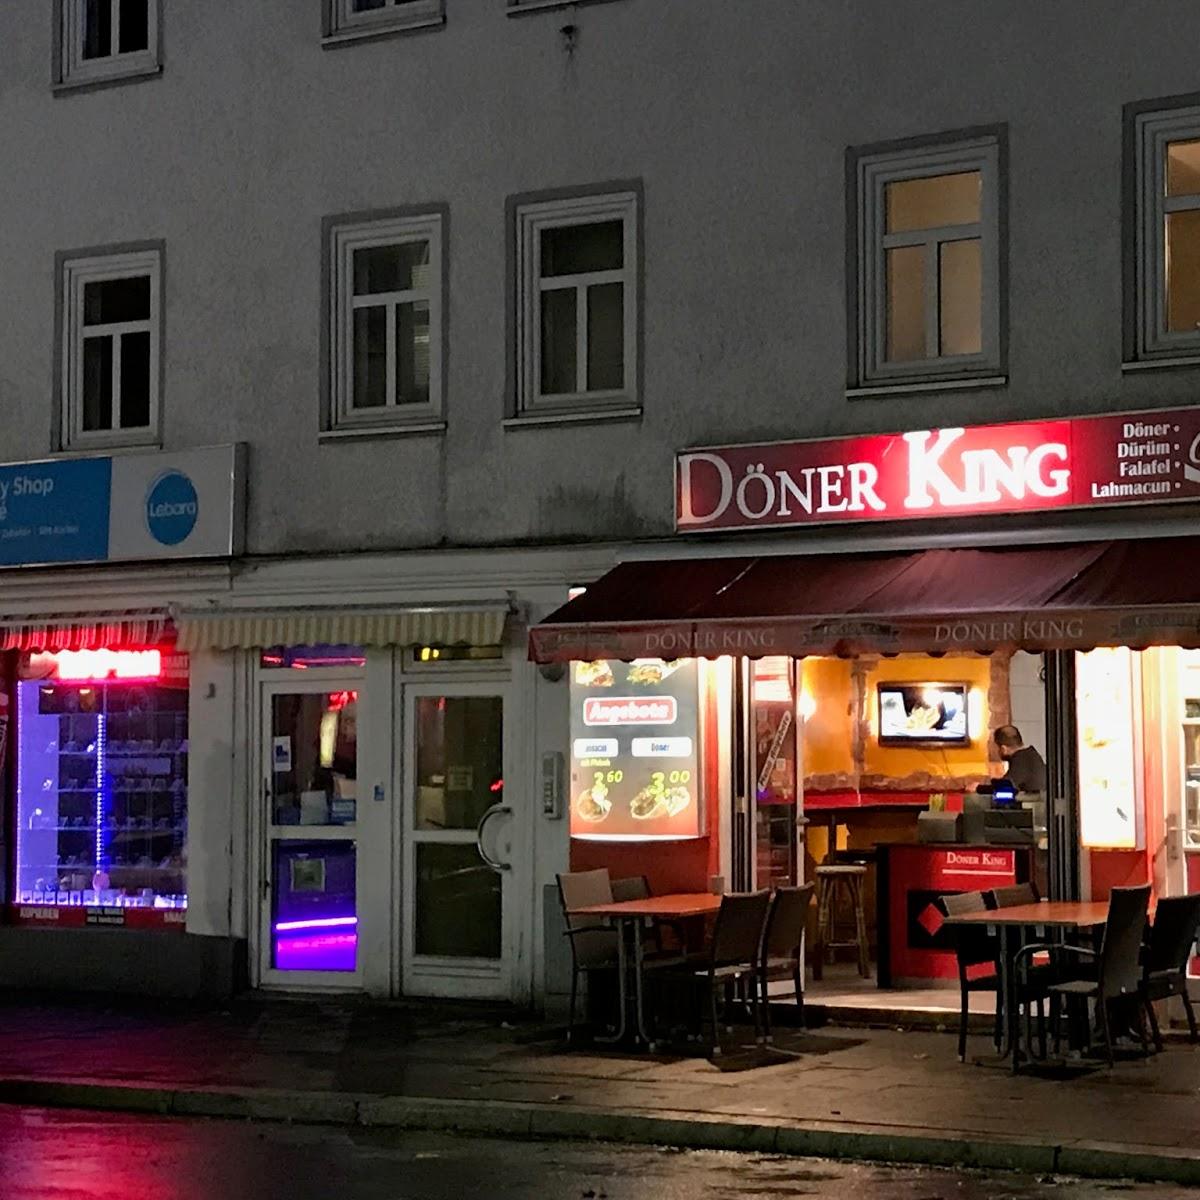 Restaurant "Döner King" in Göttingen